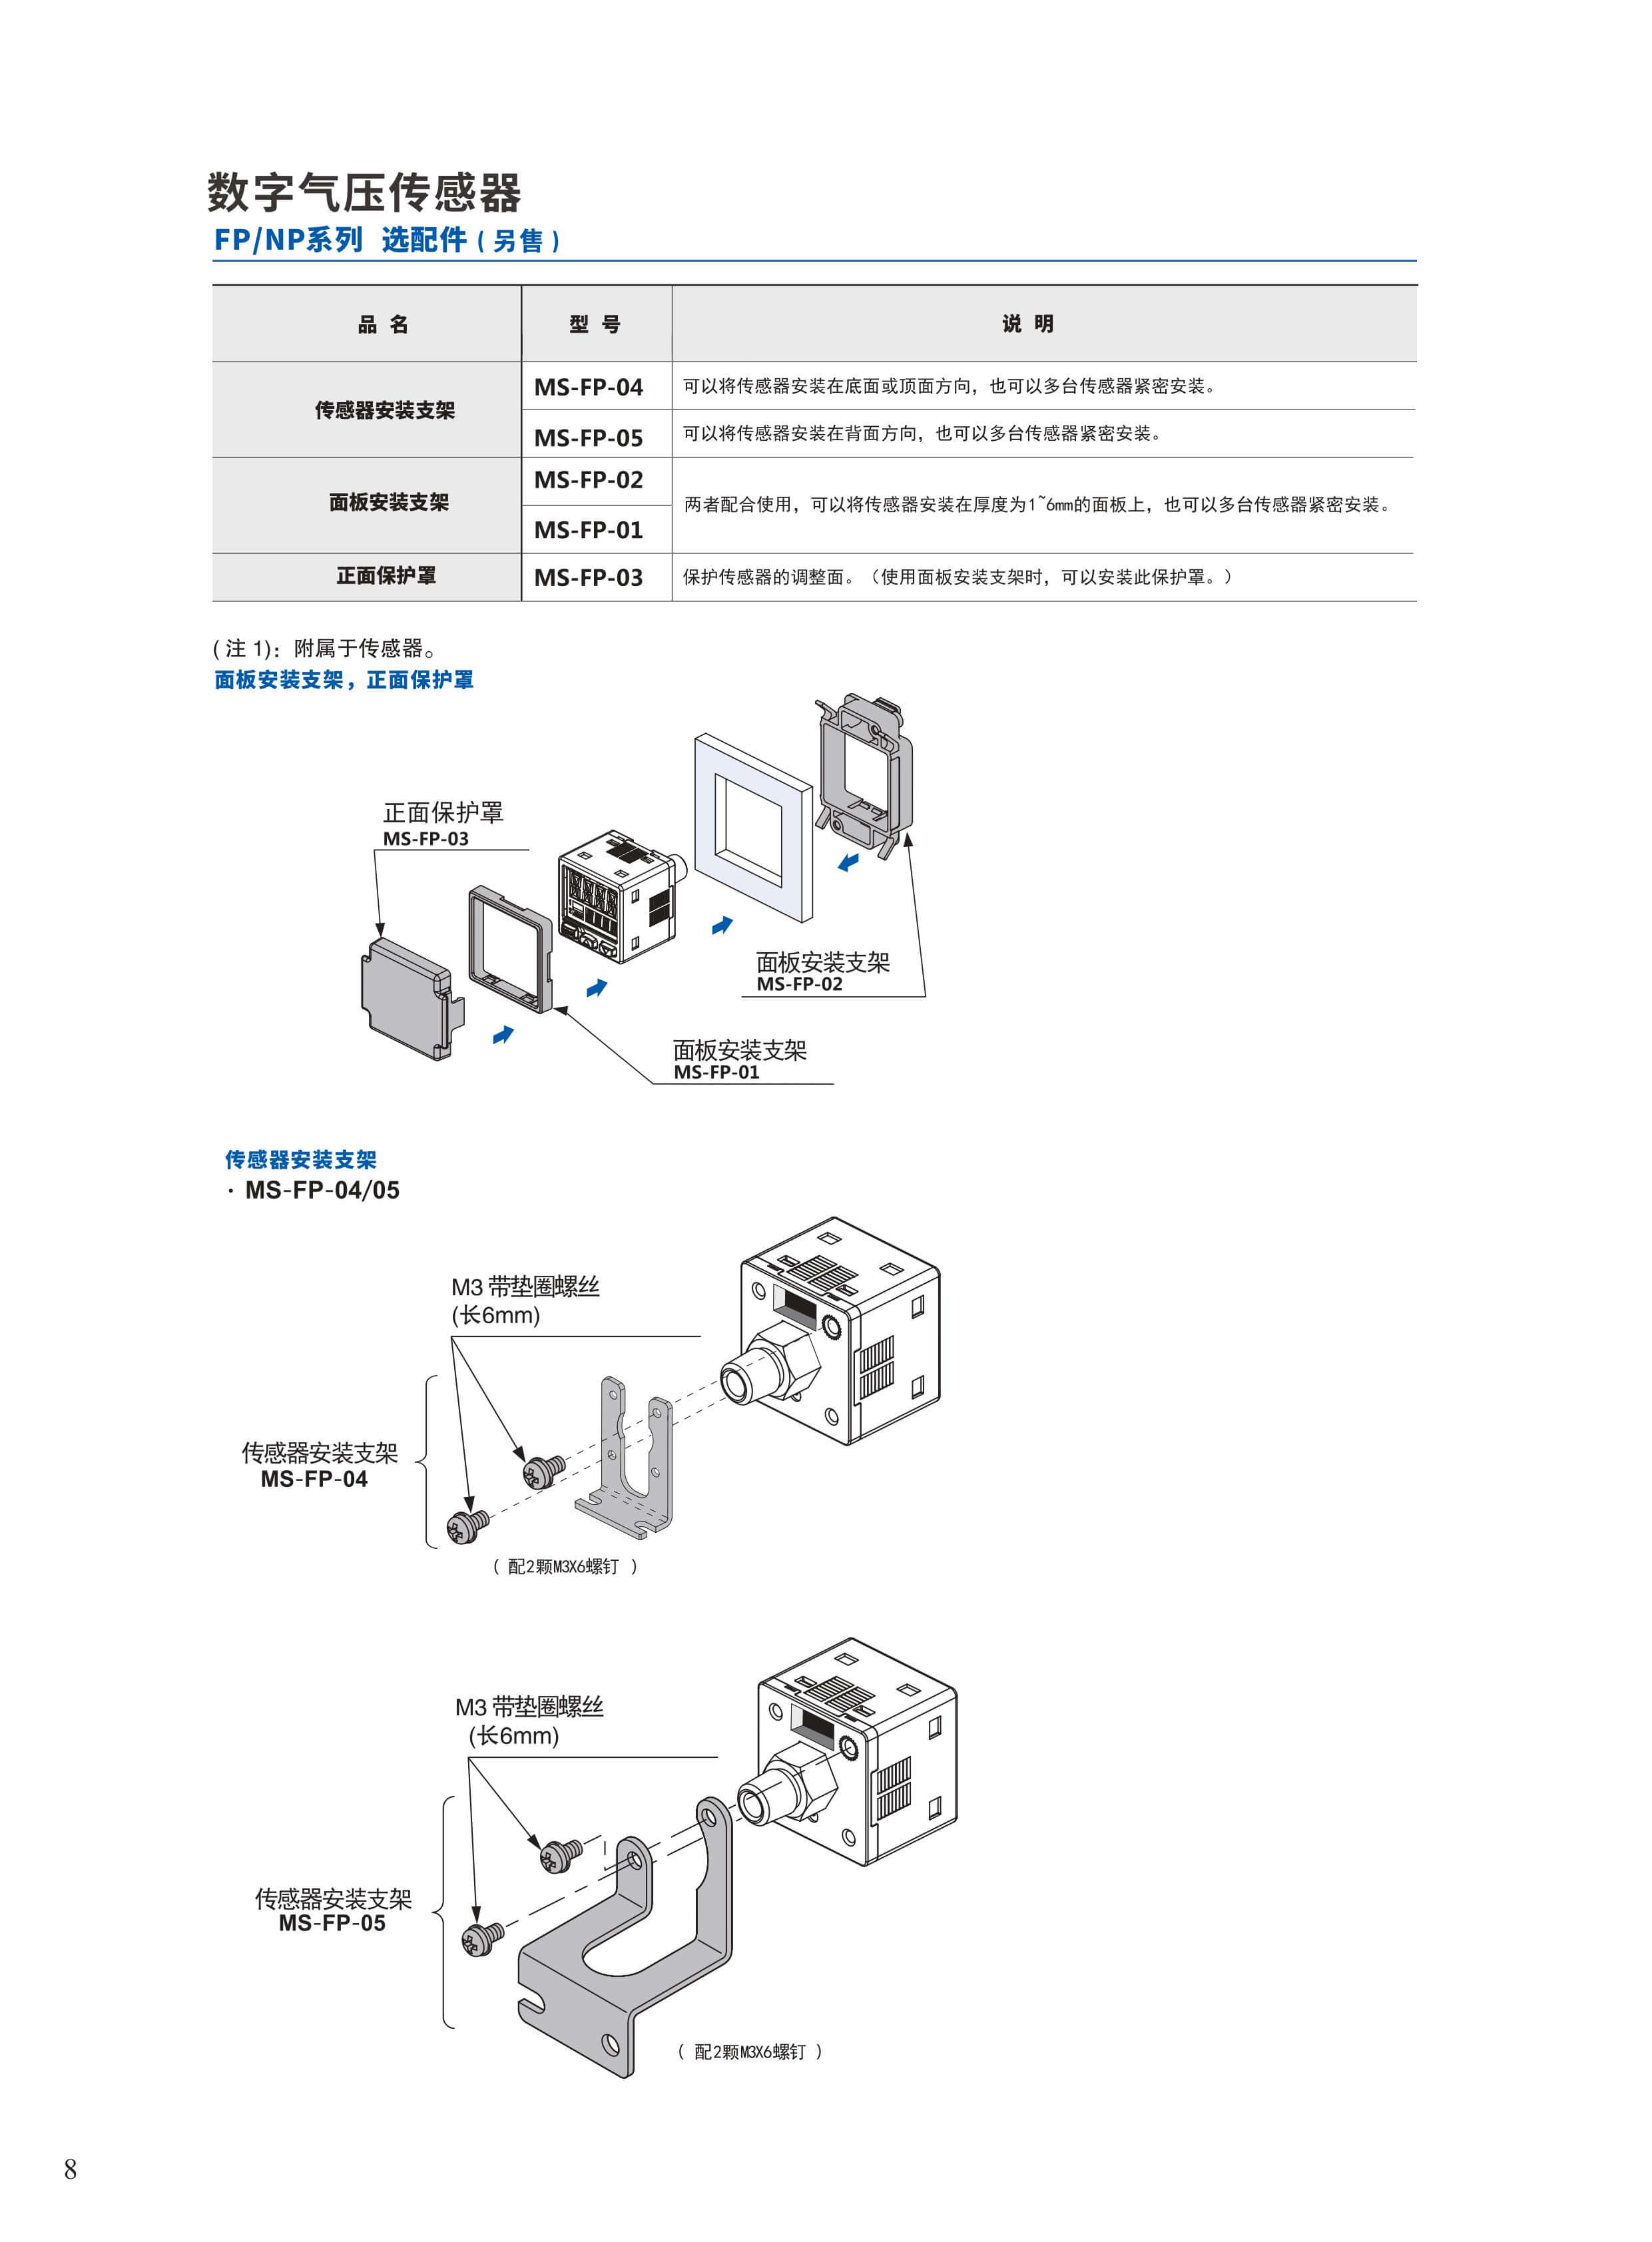 国内气压表供应商-三轴陀螺仪供应商-深圳市艾而特工业自动化设备有限公司